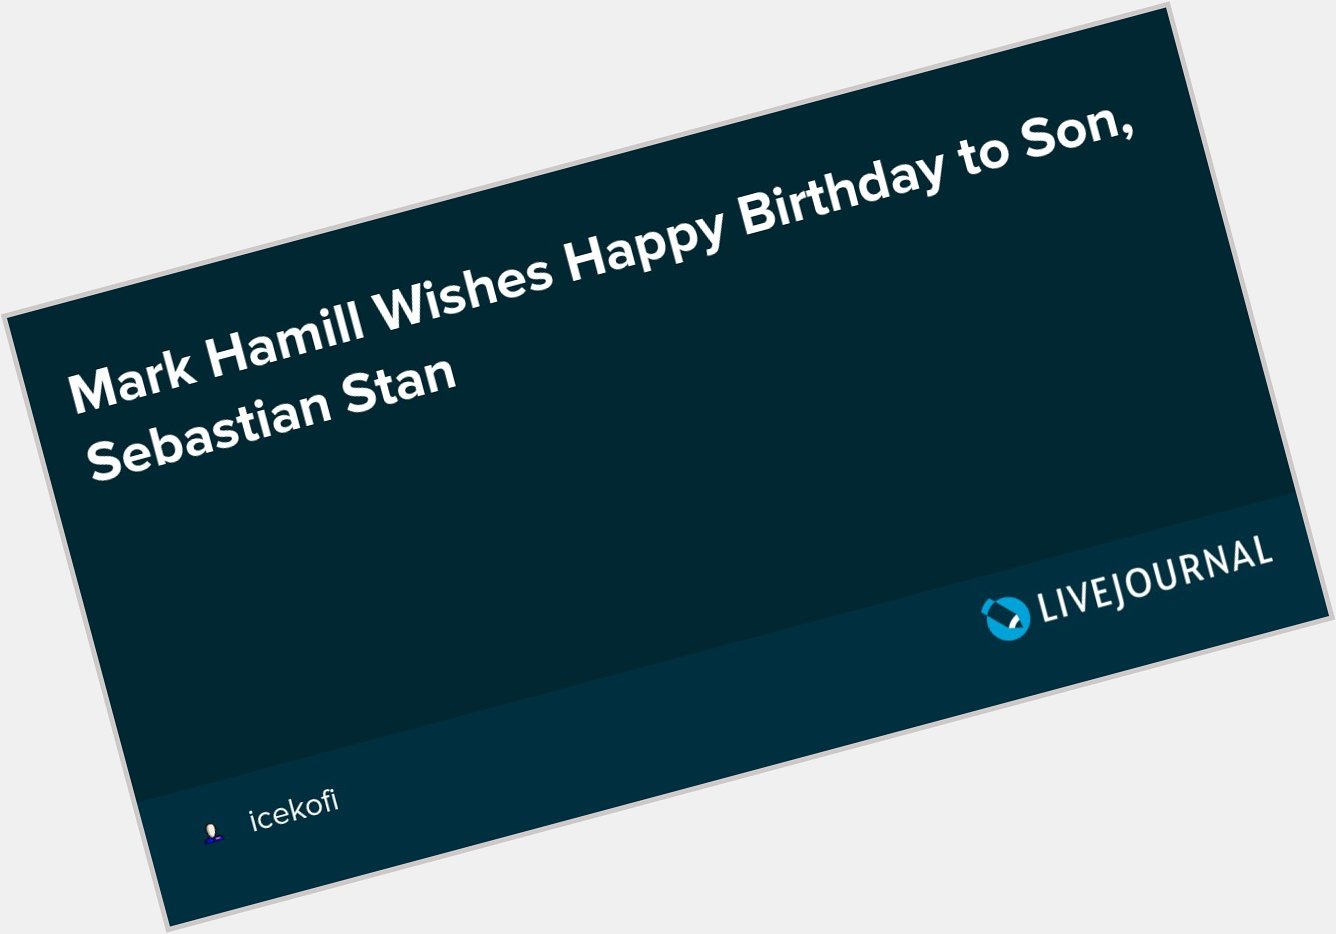 Mark Hamill Wishes Happy Birthday to Son, Sebastian Stan  